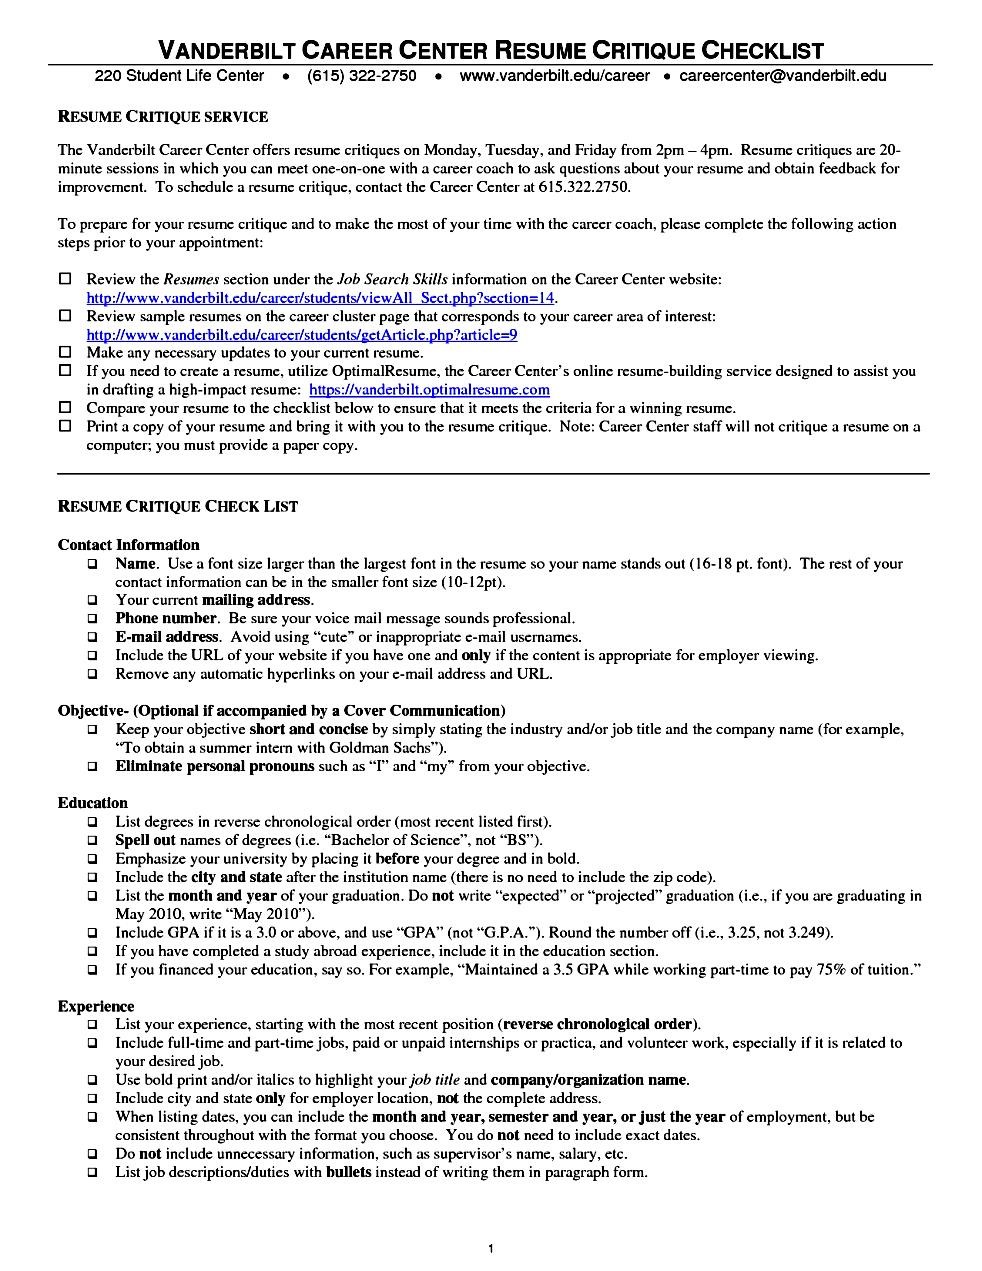 Sample resume for medical school admission   after